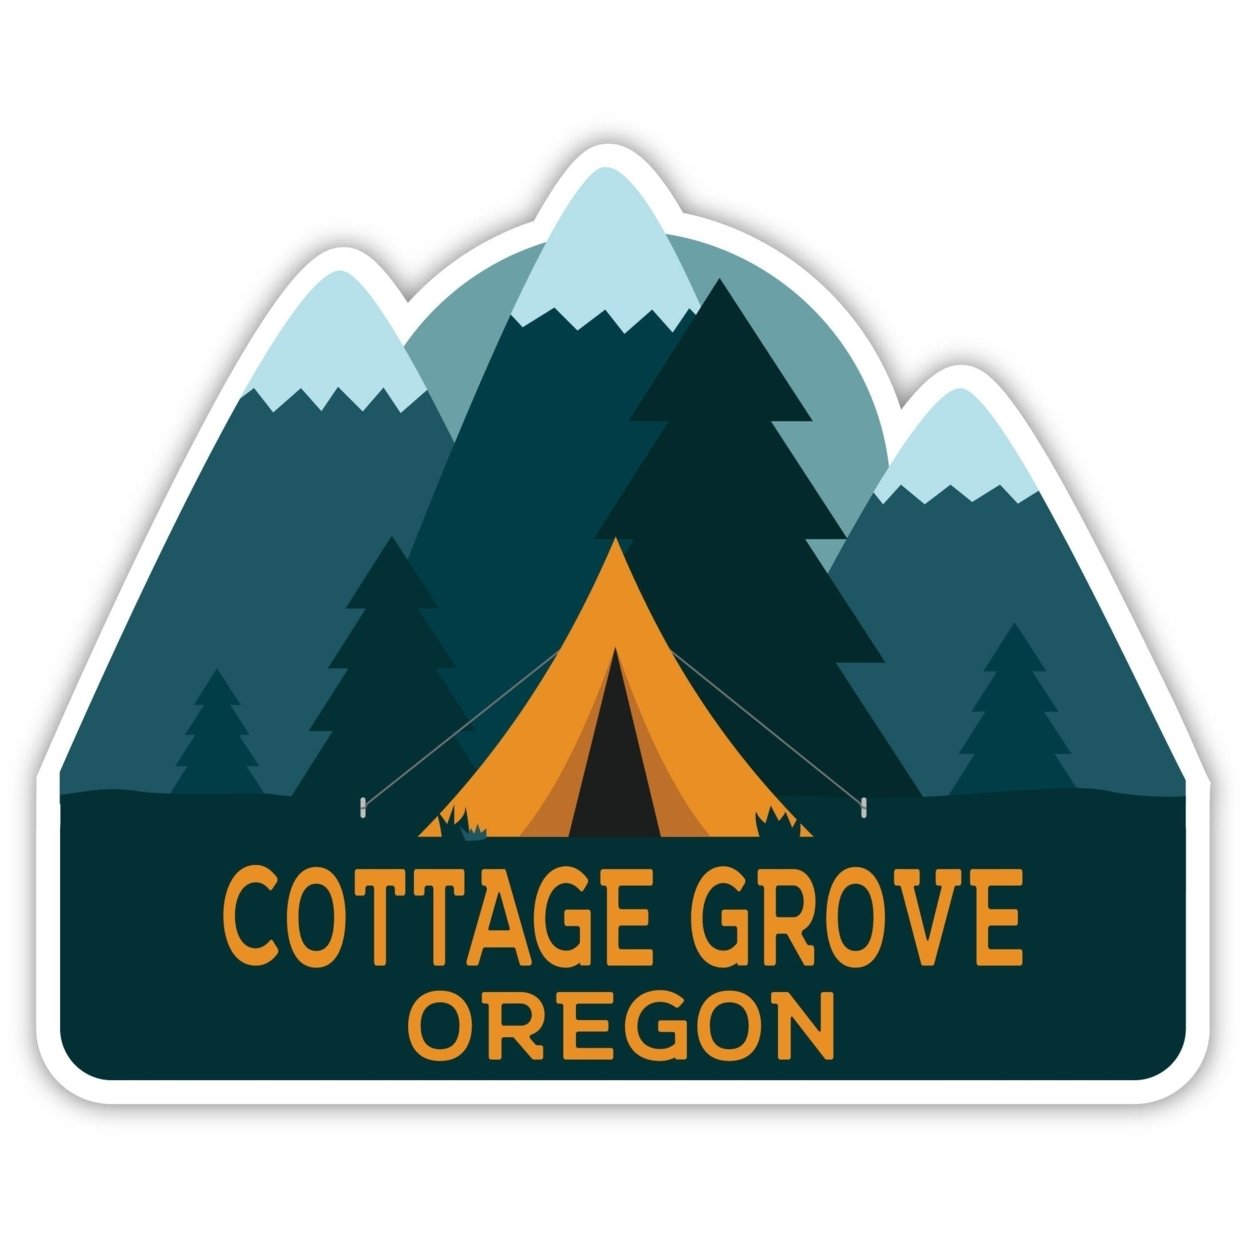 Cottage Grove Oregon Souvenir Decorative Stickers (Choose Theme And Size) - Single Unit, 10-Inch, Tent